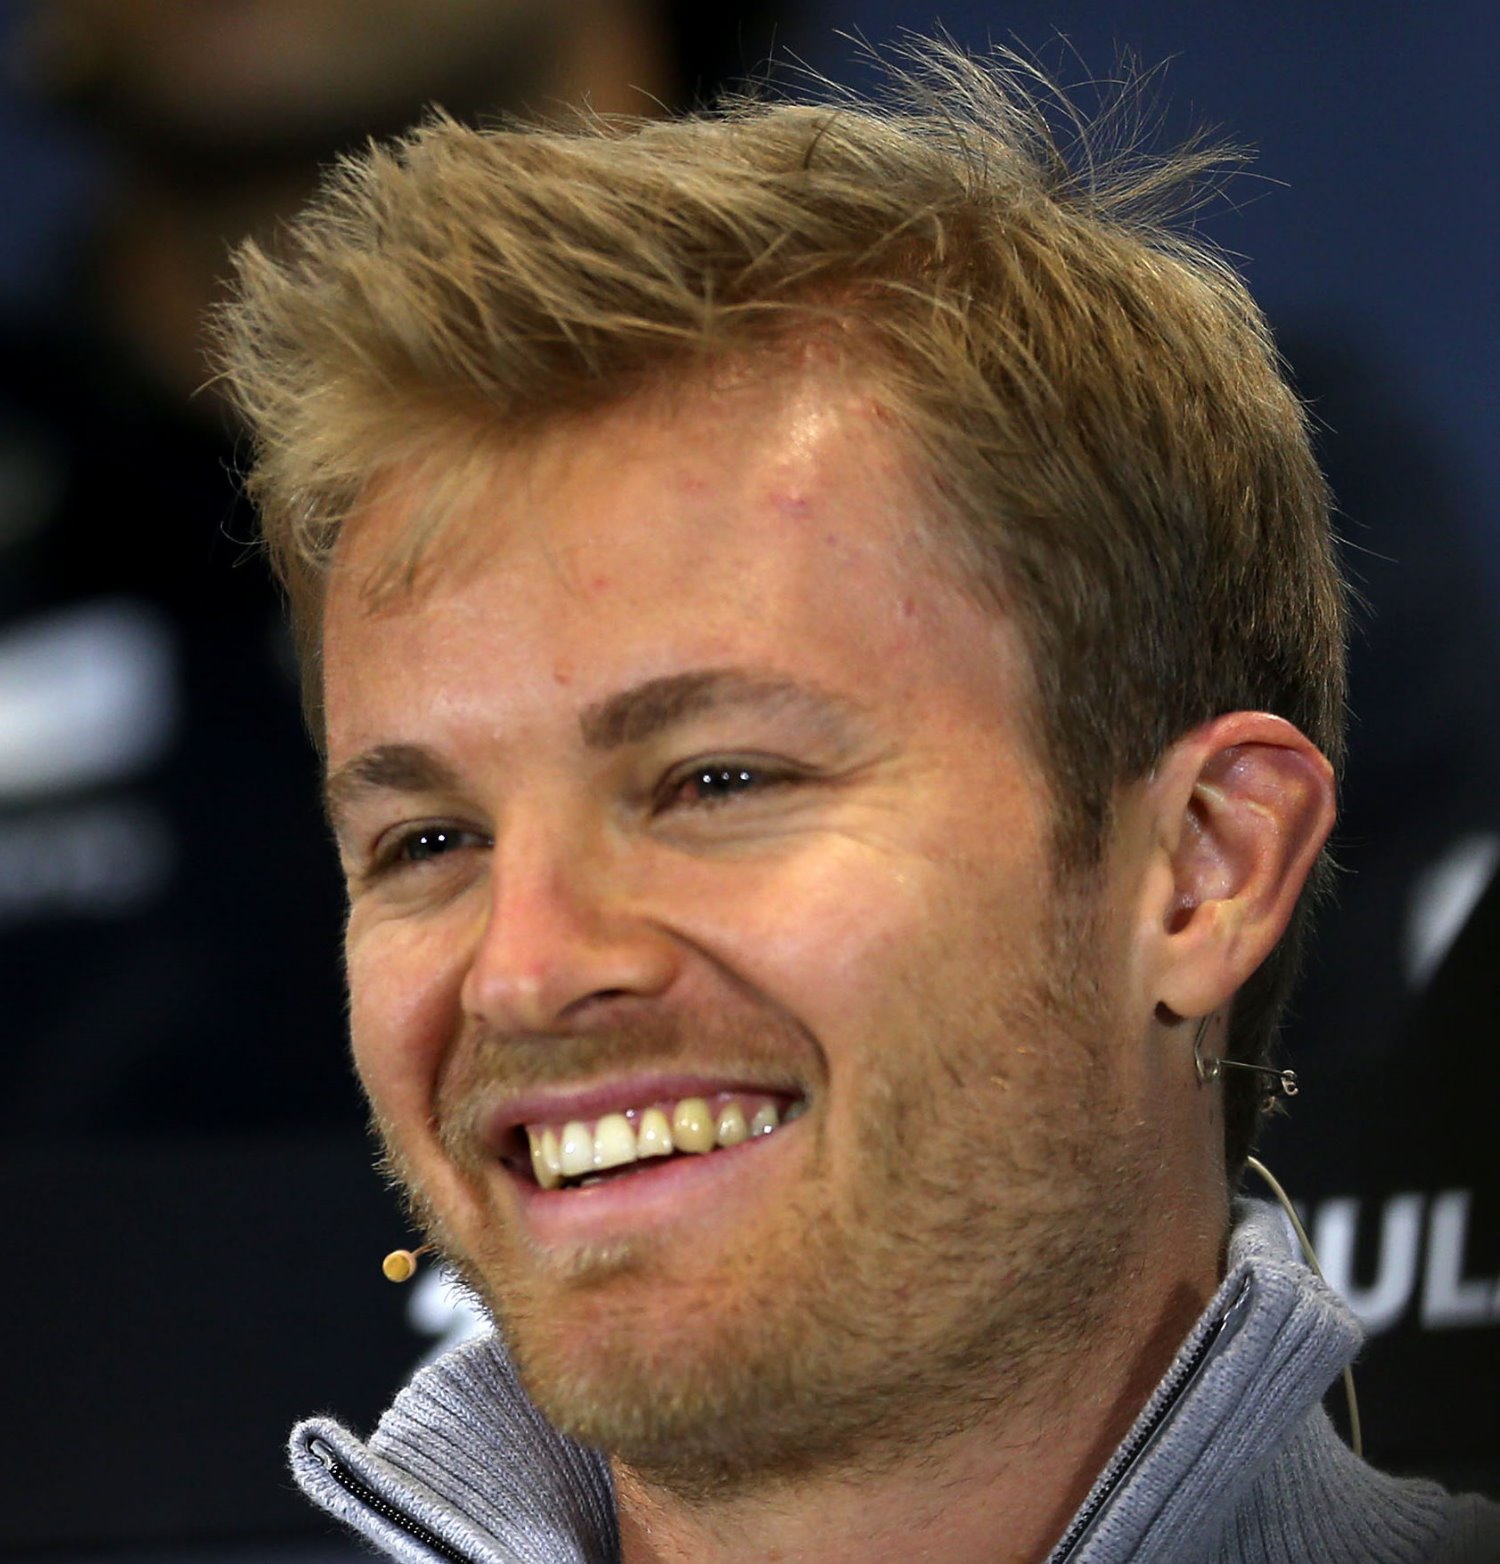 A happy Nico Rosberg